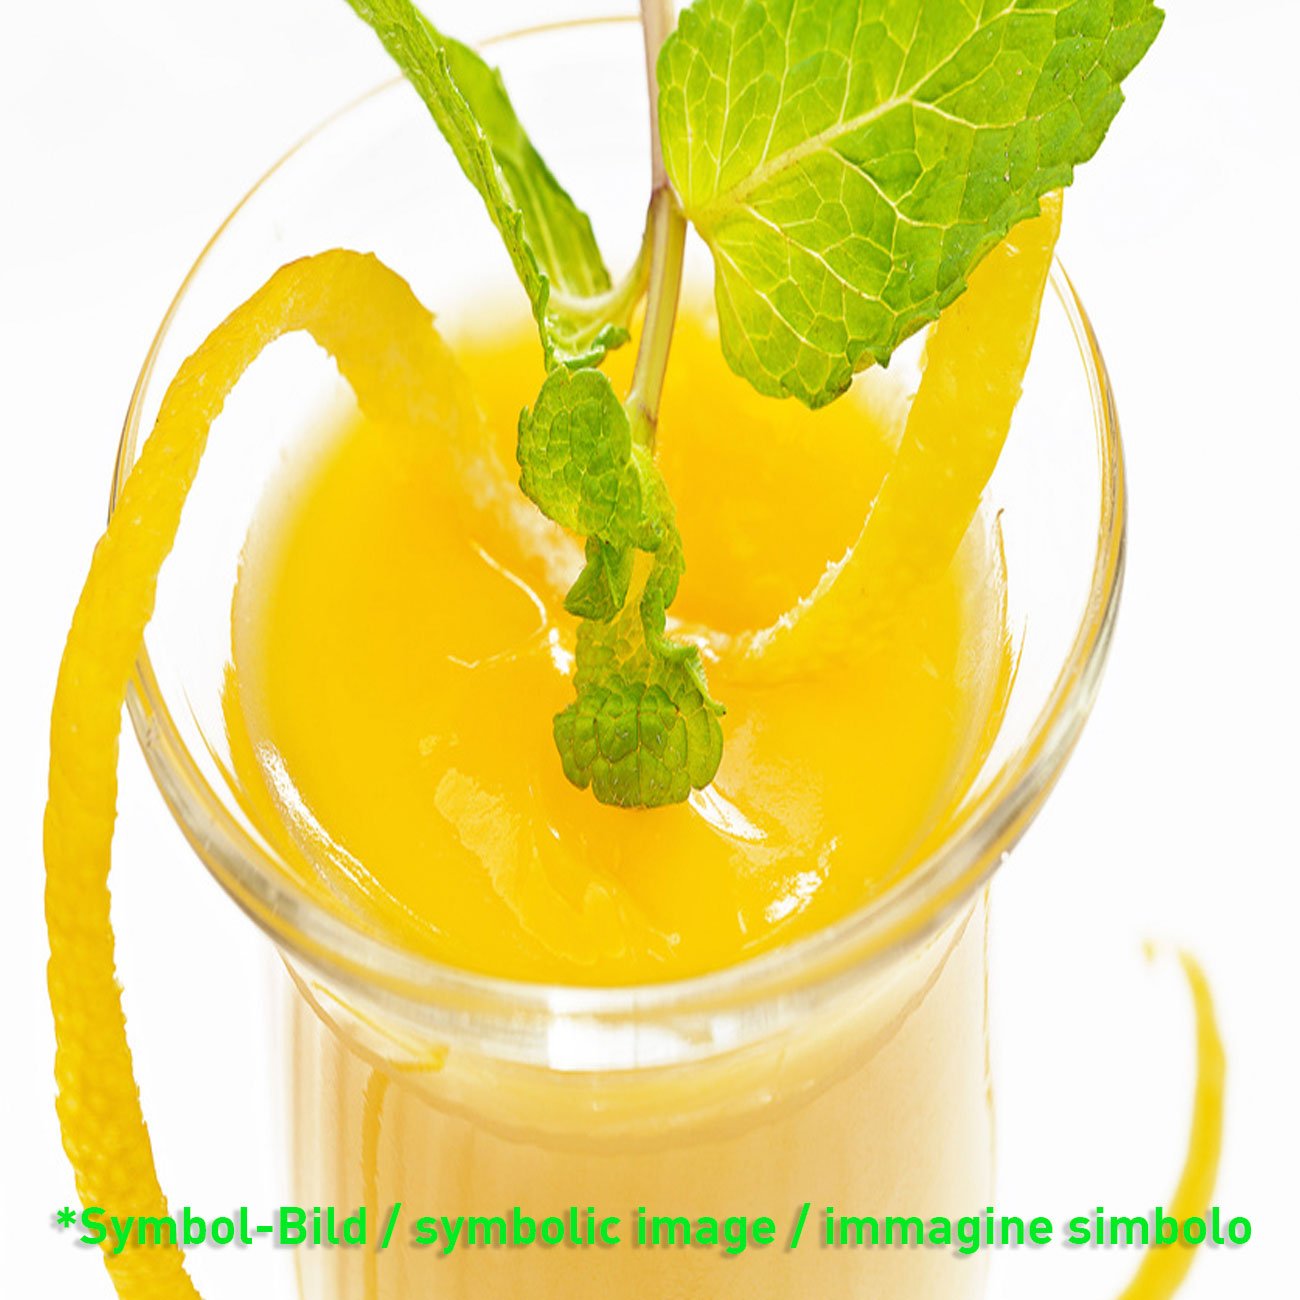 Lemon Fresh - Dose 3,25 kg - Super Top Marmorierer ** NUR AUF VORBESTELLUNG!!!